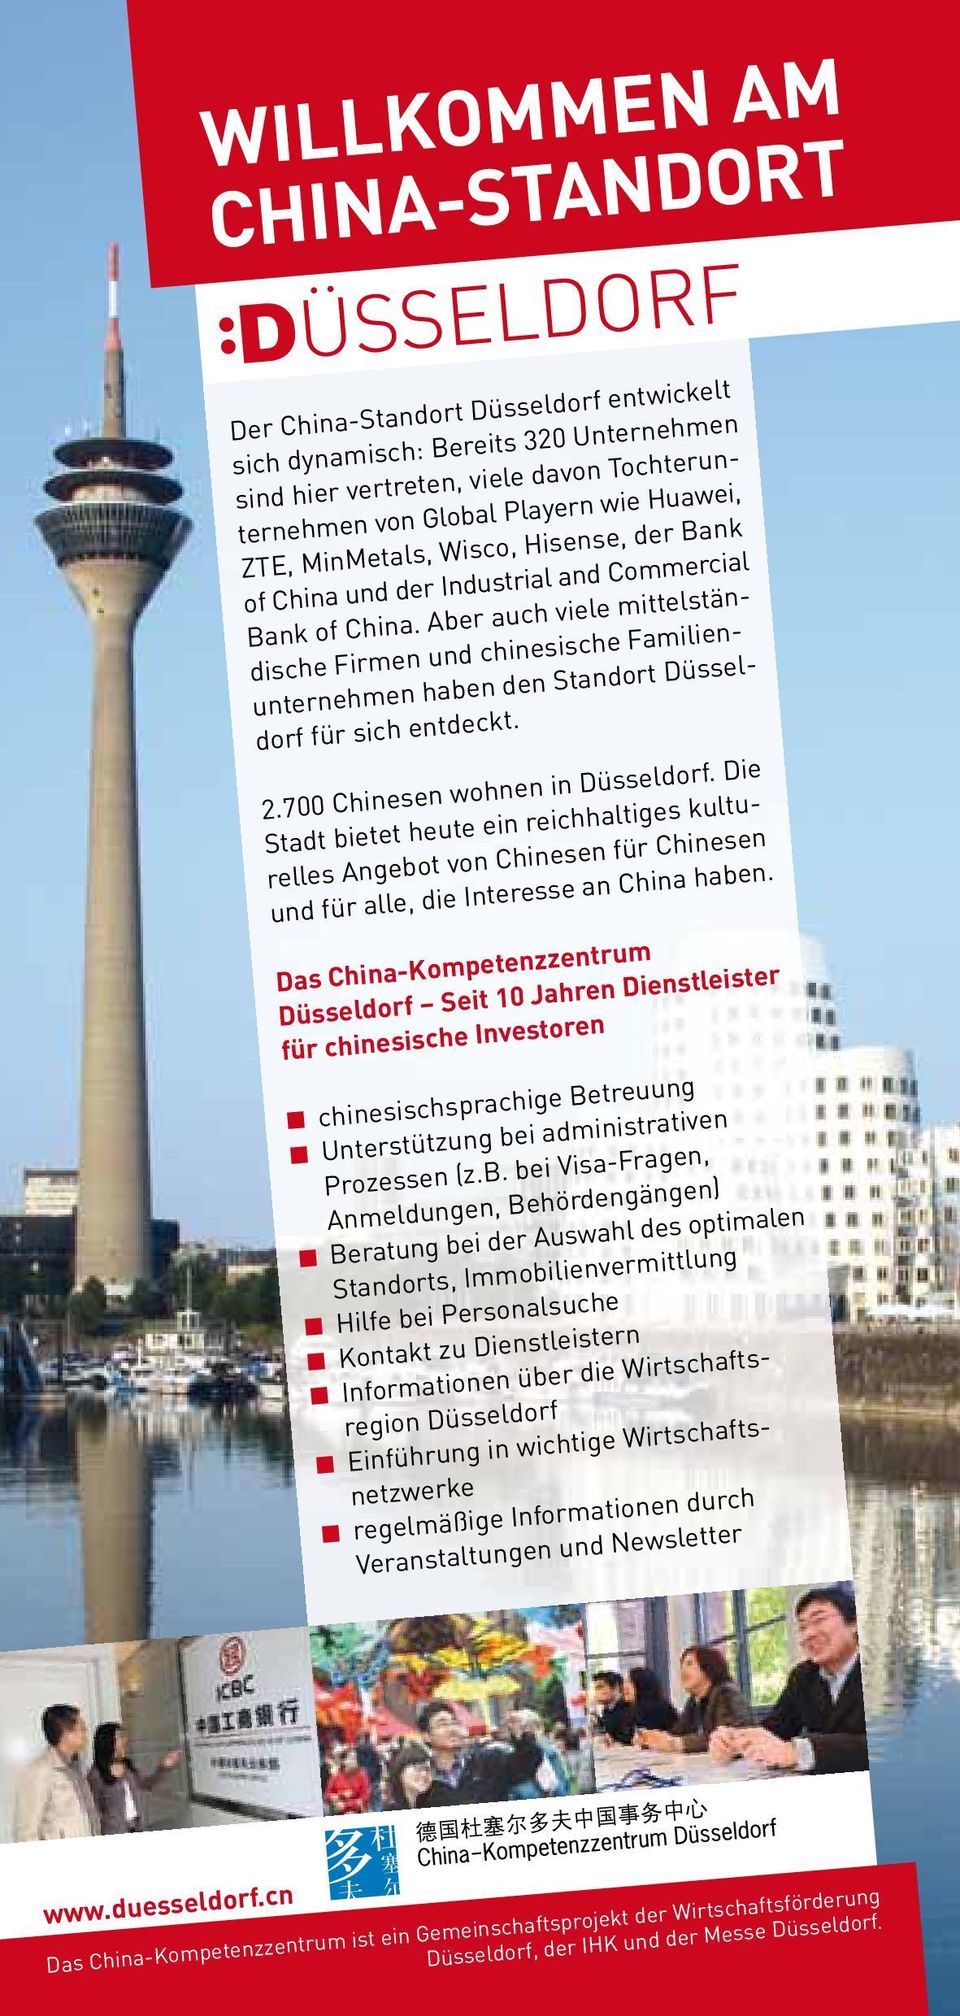 Aber auch viele mittelständische Firmen und chinesische Familienunternehmen haben den Standort Düsseldorf für sich entdeckt. 2.700 Chinesen wohnen in Düsseldorf.